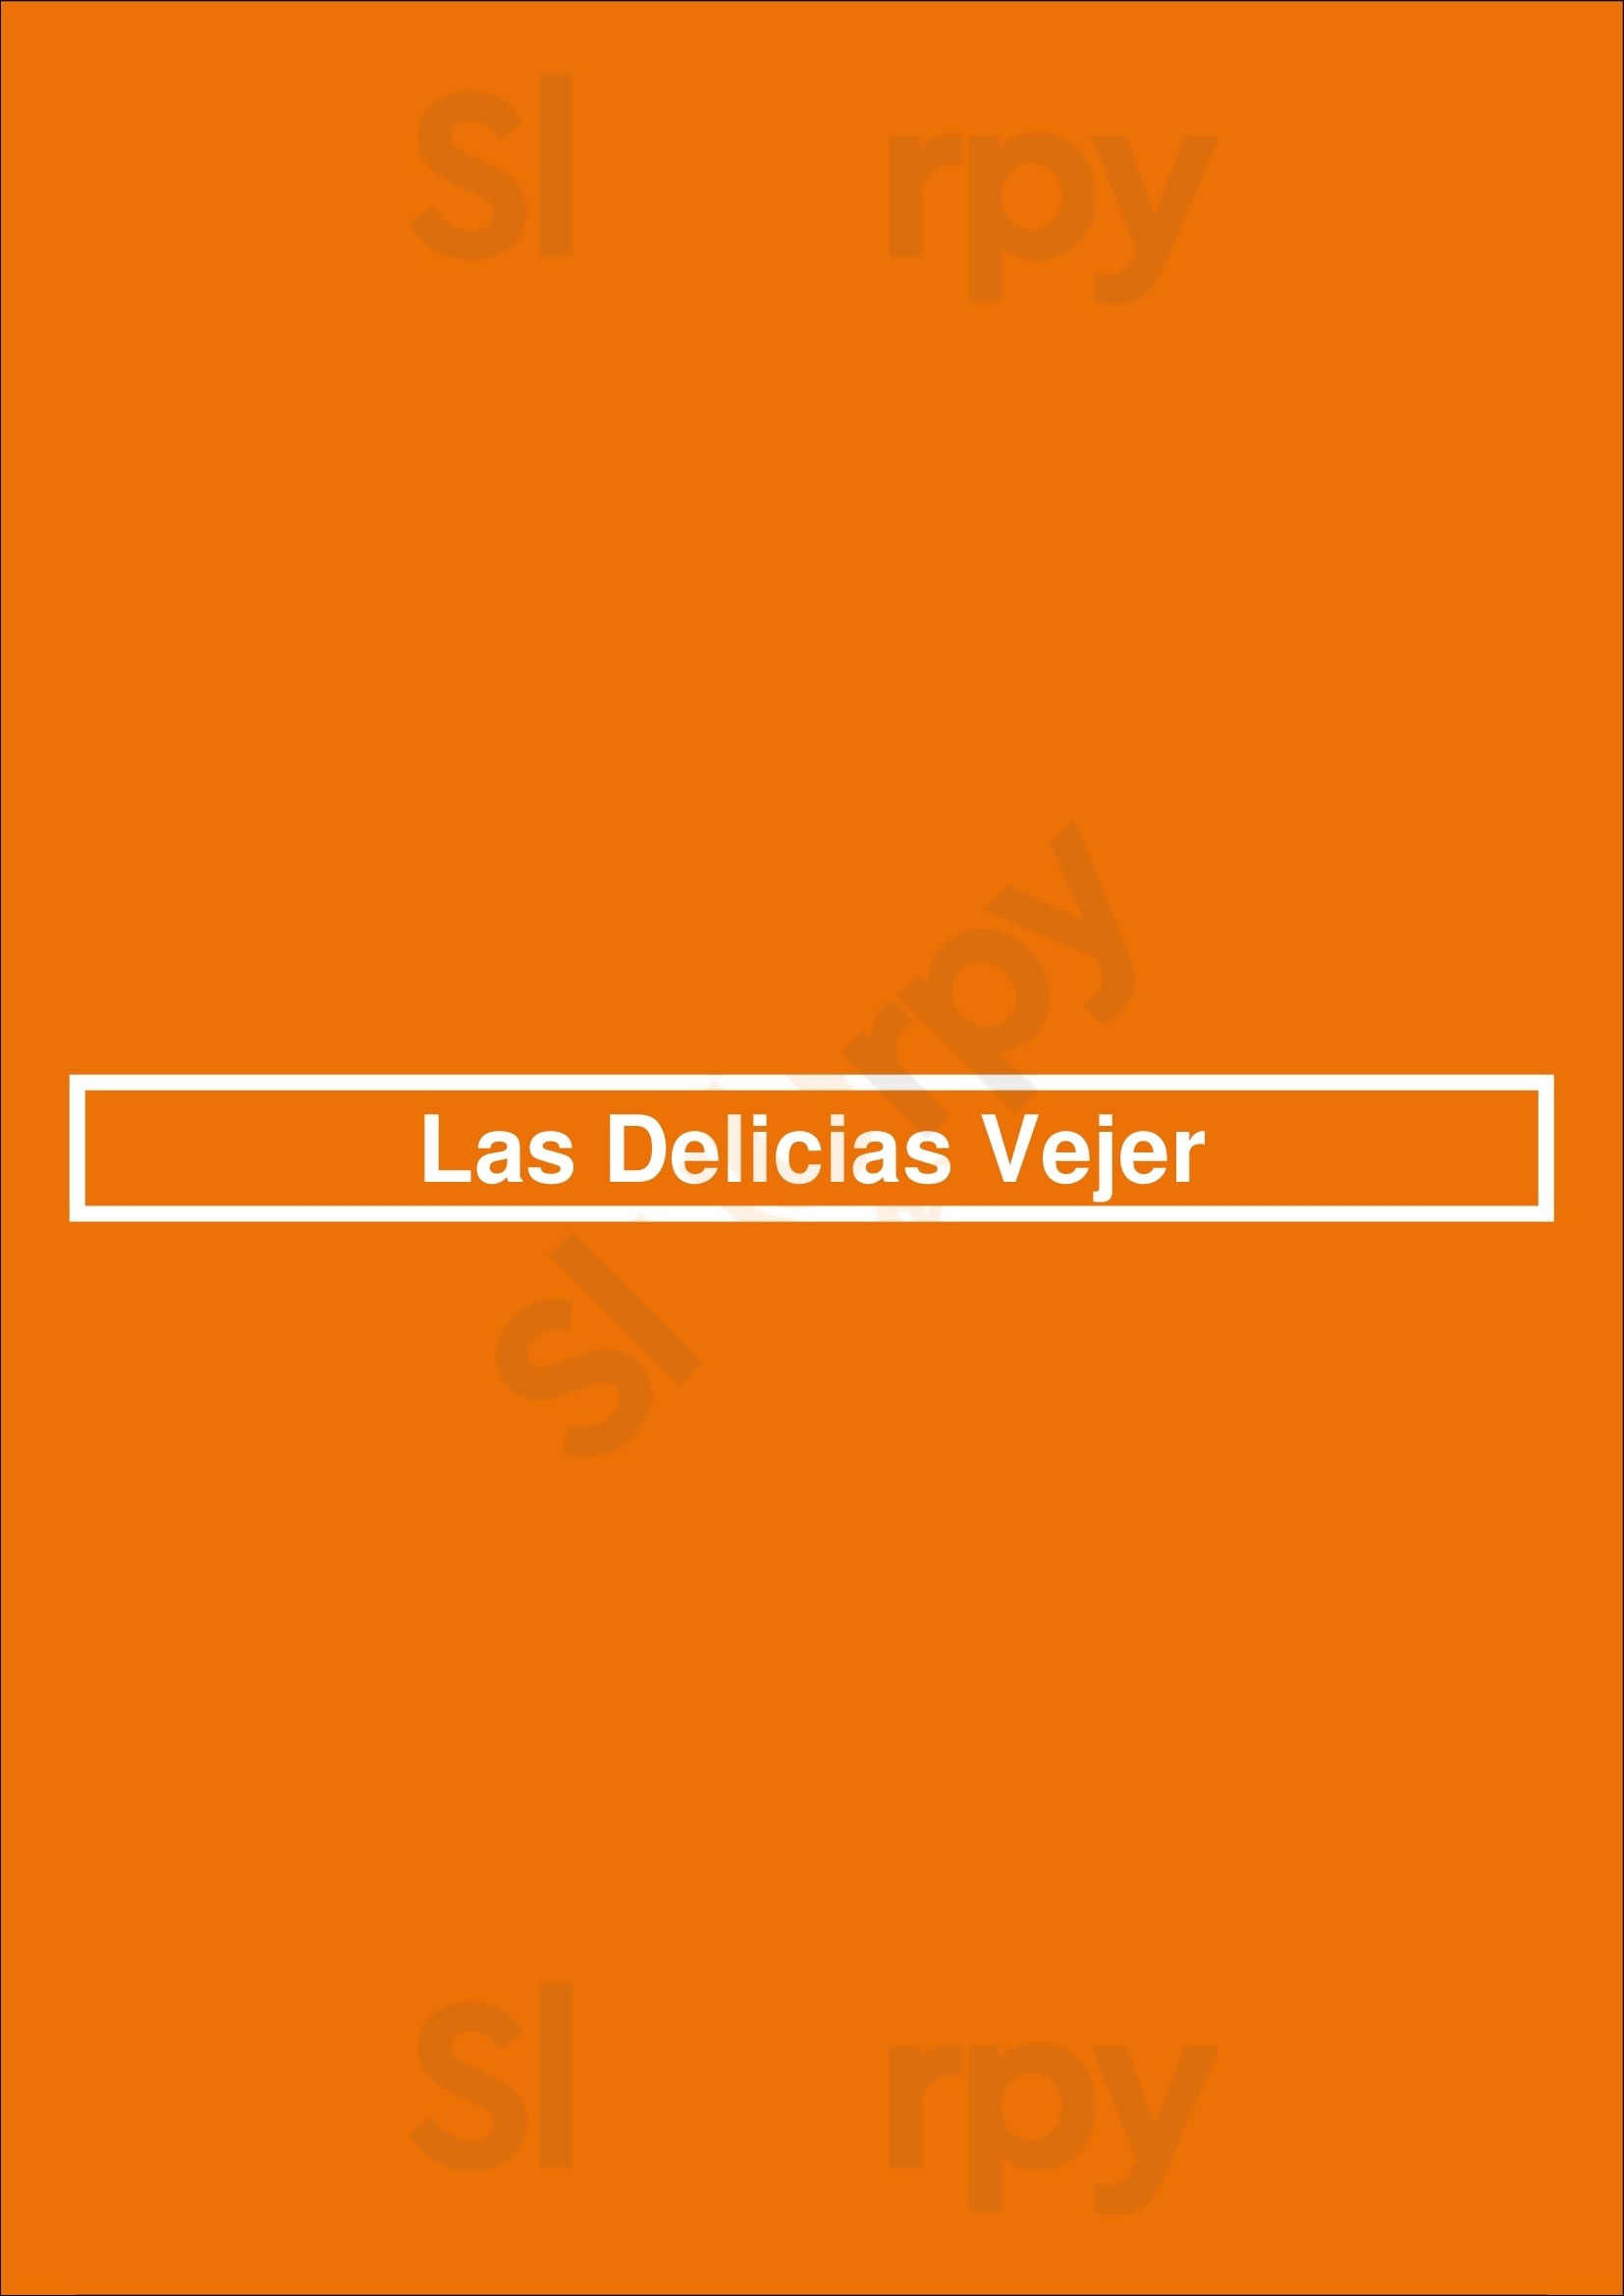 Las Delicias Vejer Vejer de la Frontera Menu - 1